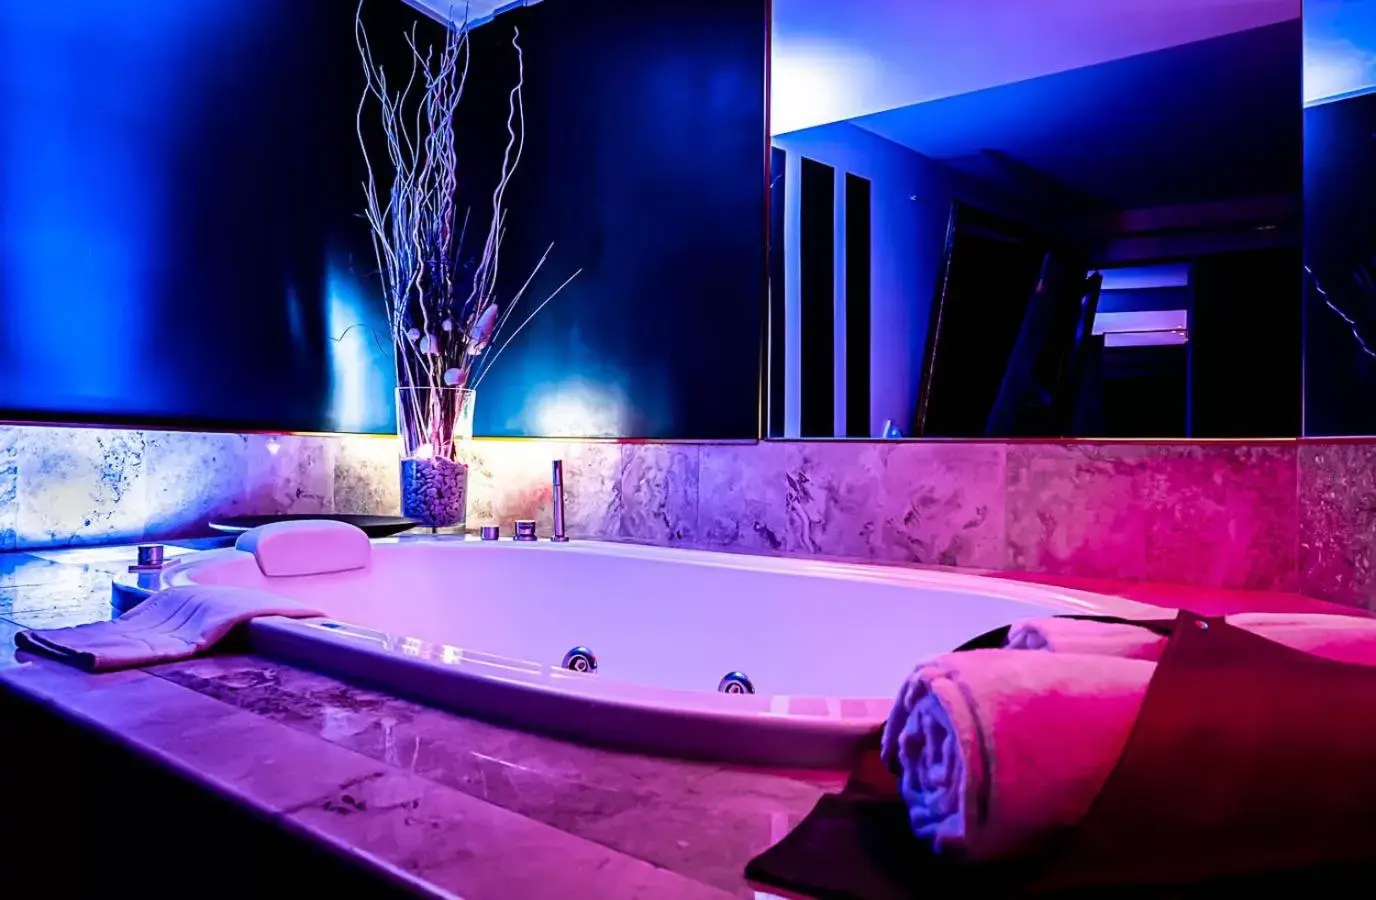 Hot Tub, Bathroom in Business Hotel